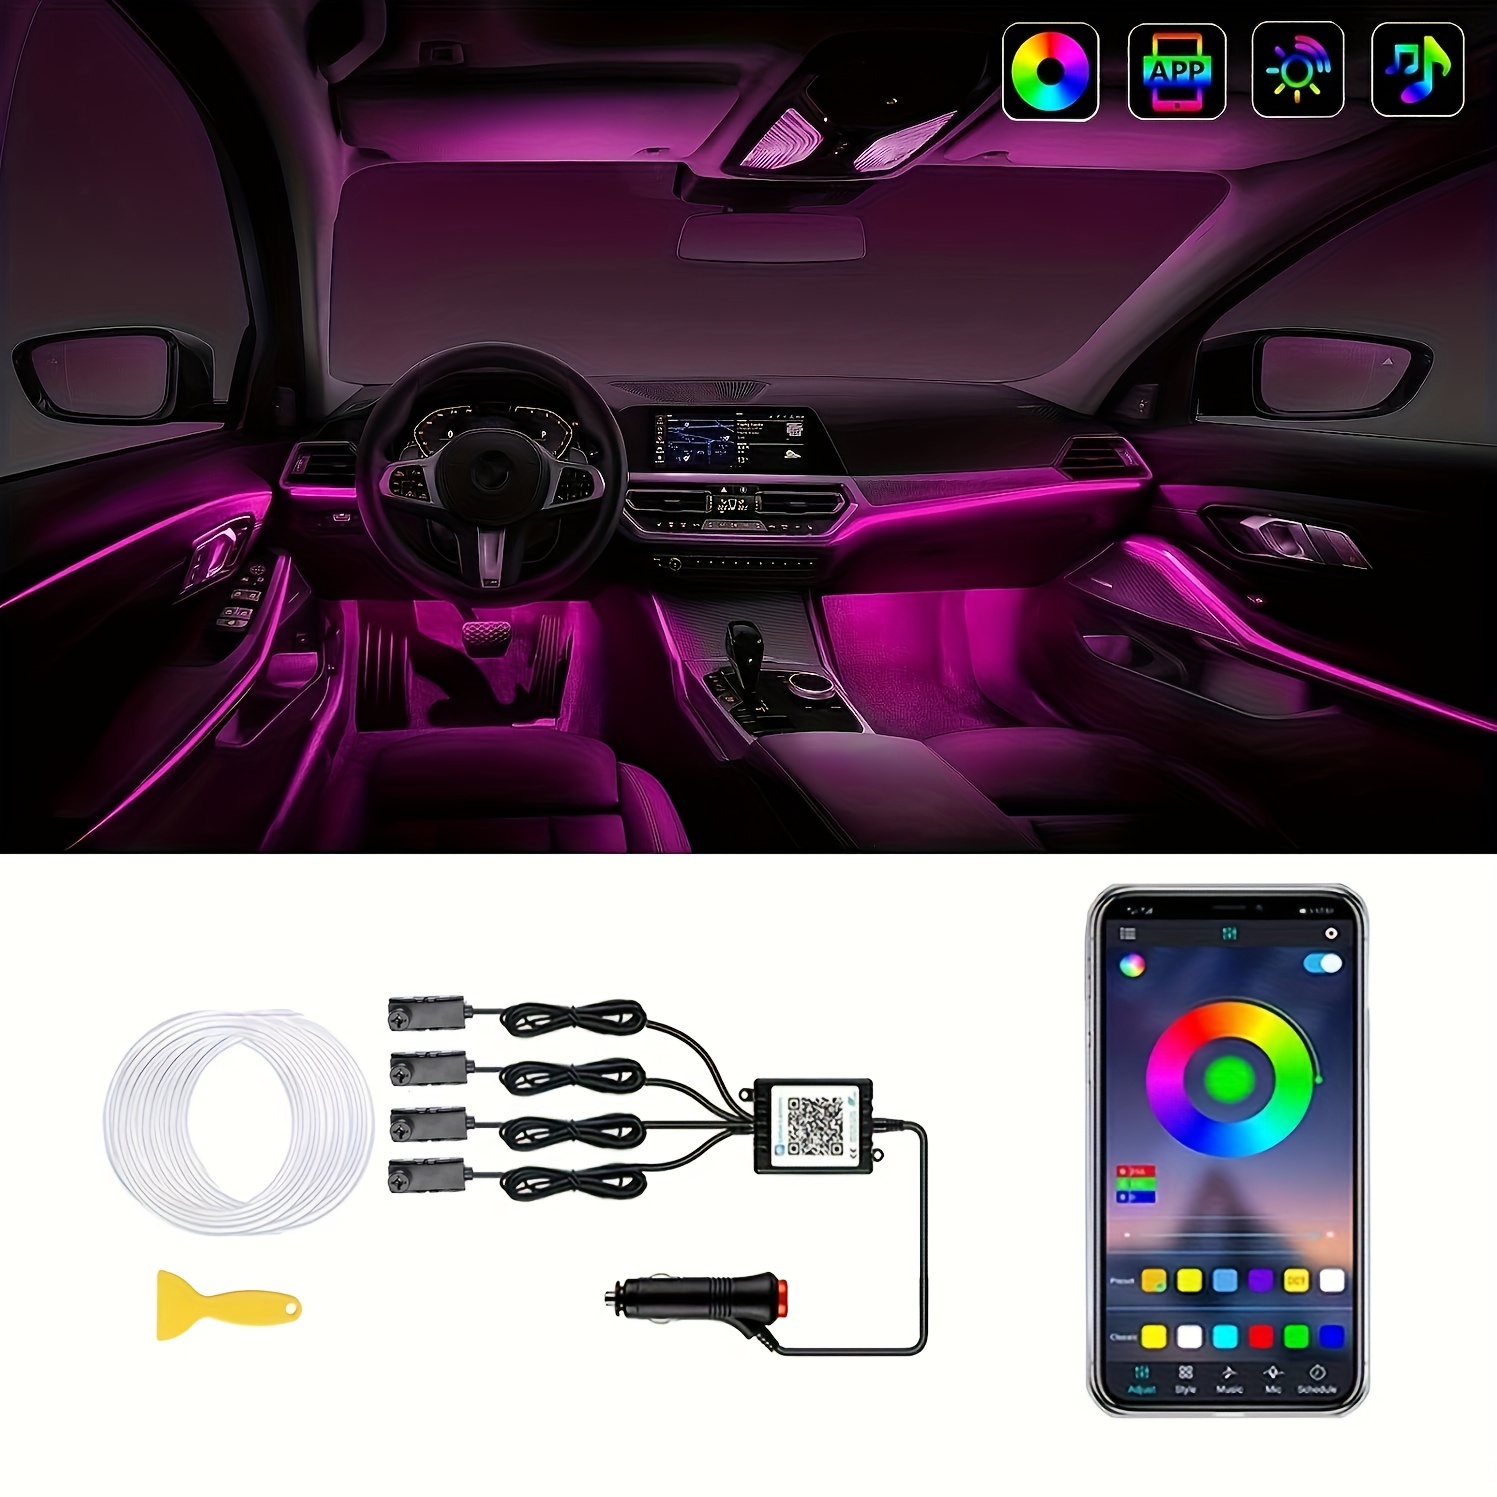 Lampe de pied de voiture à LED, lumière ambiante RVB, application USB,  télécommande sans fil, contrôle de la musique, intérieur automobile,  lumières